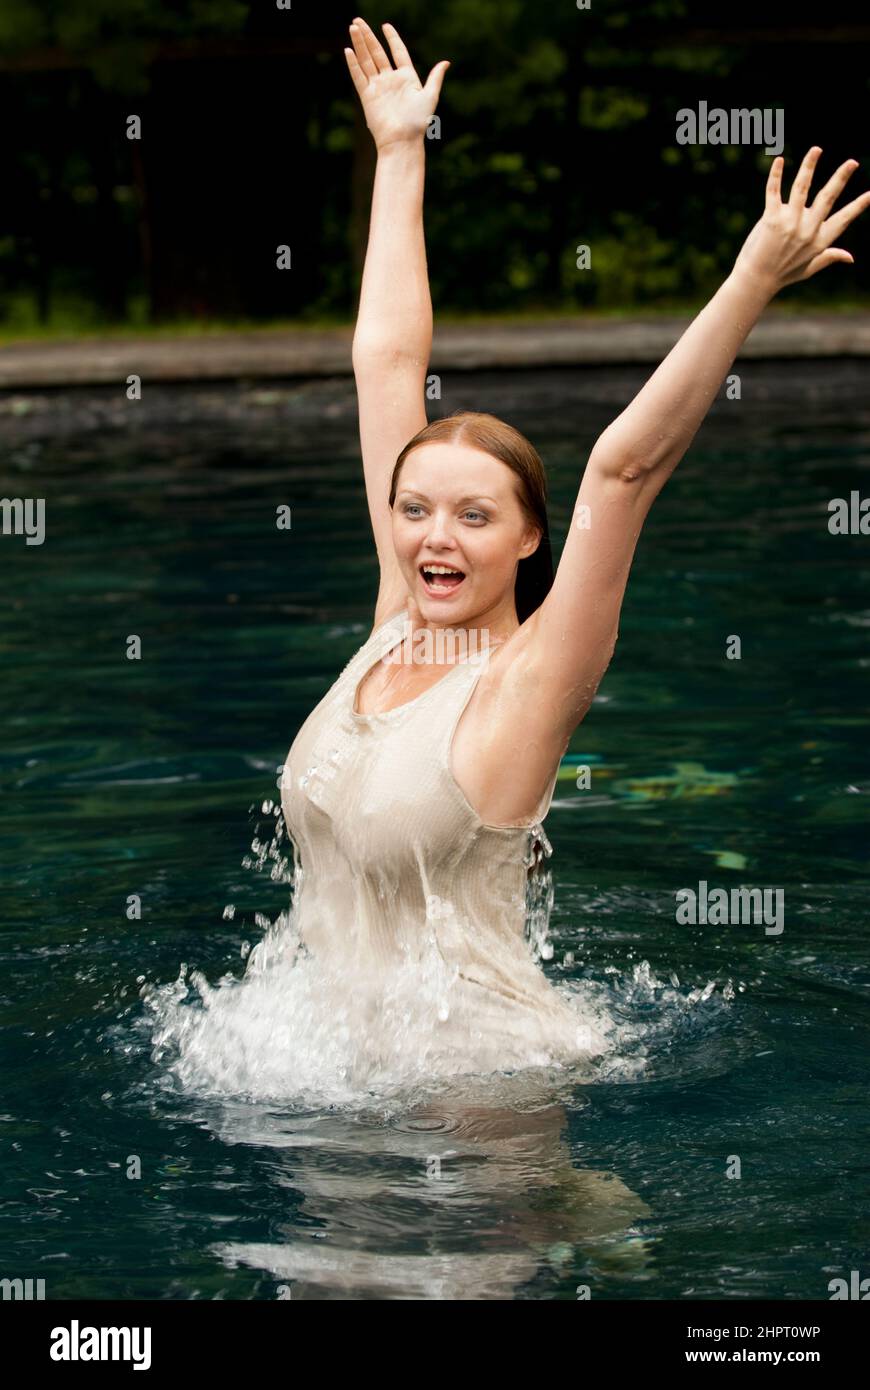 Woman in bikini splashing and smiling in pool Stock Photo